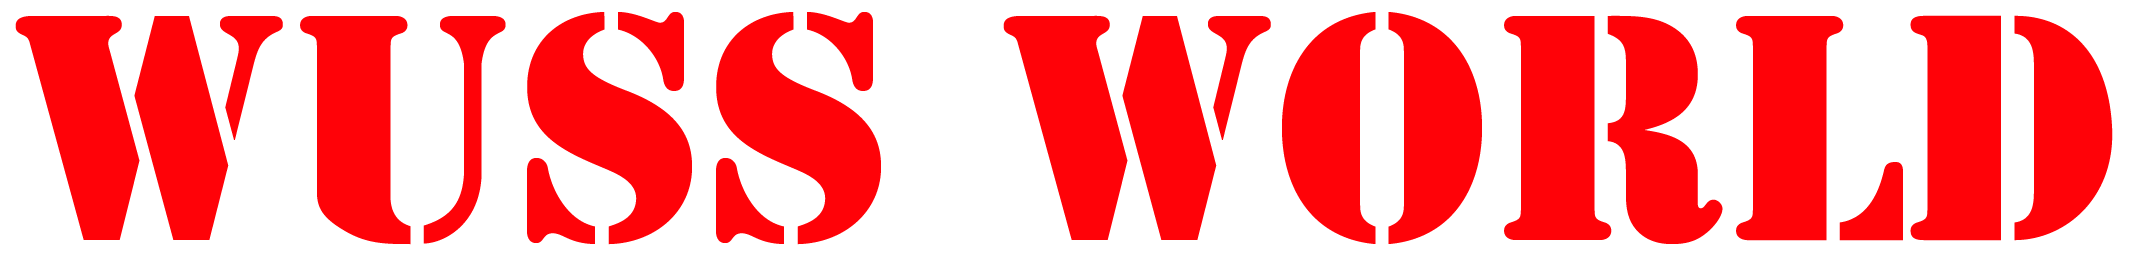 Wuss World book website logo